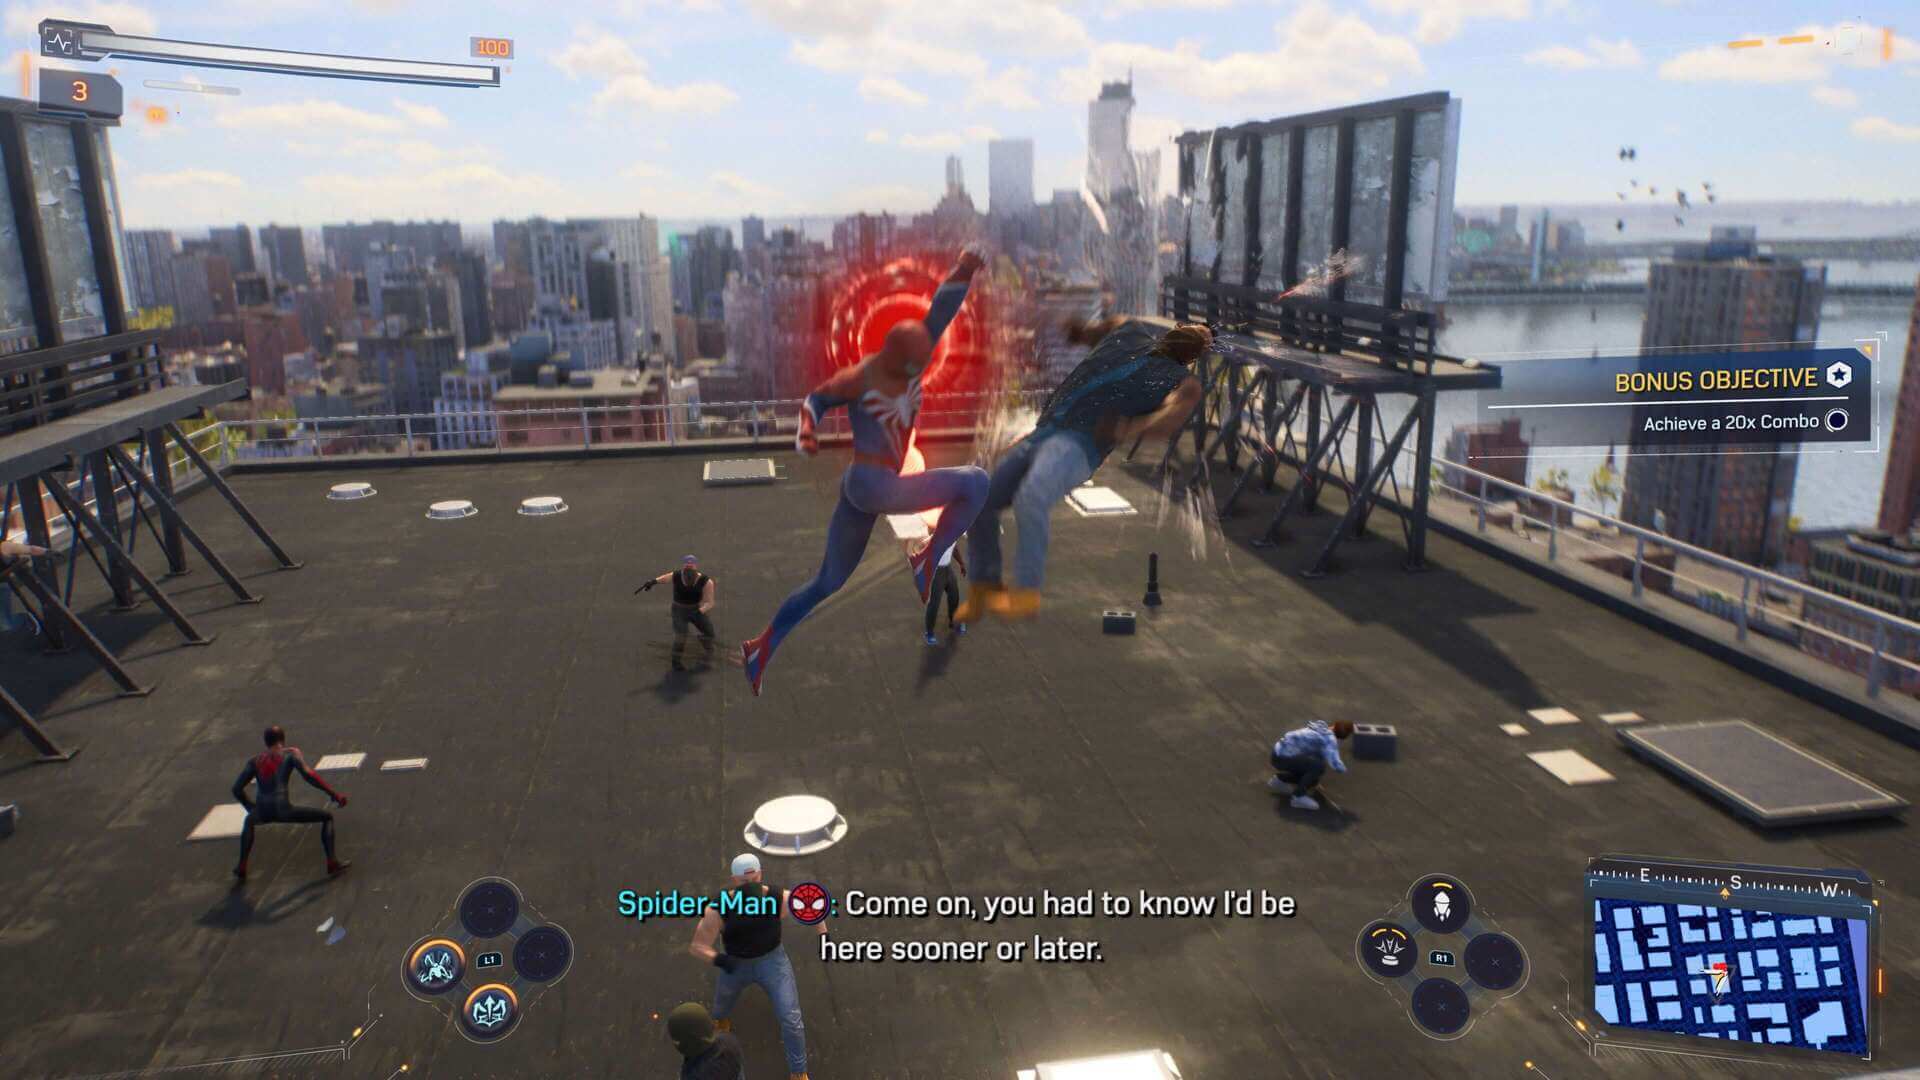 Análise: Marvel's Spider-Man 2 é jogo dos sonhos para fãs do Homem-Aranha